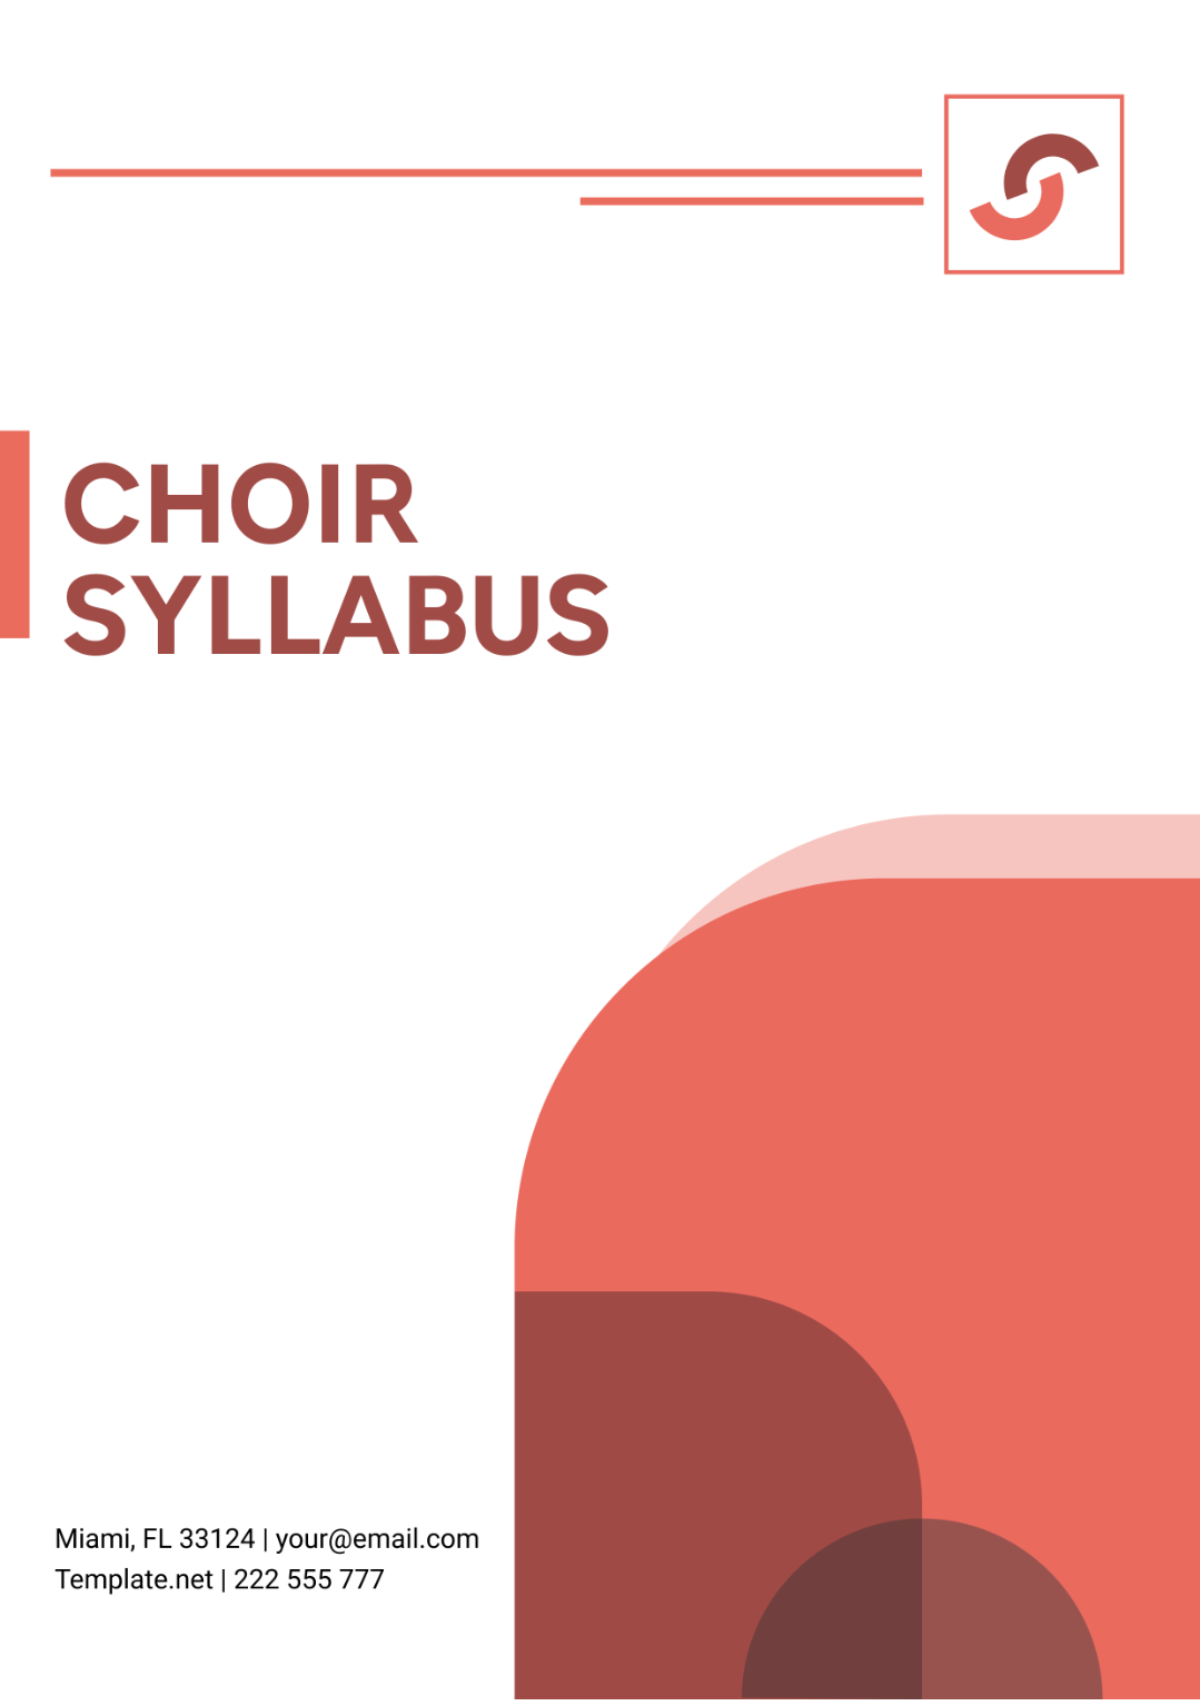 Choir Syllabus Template